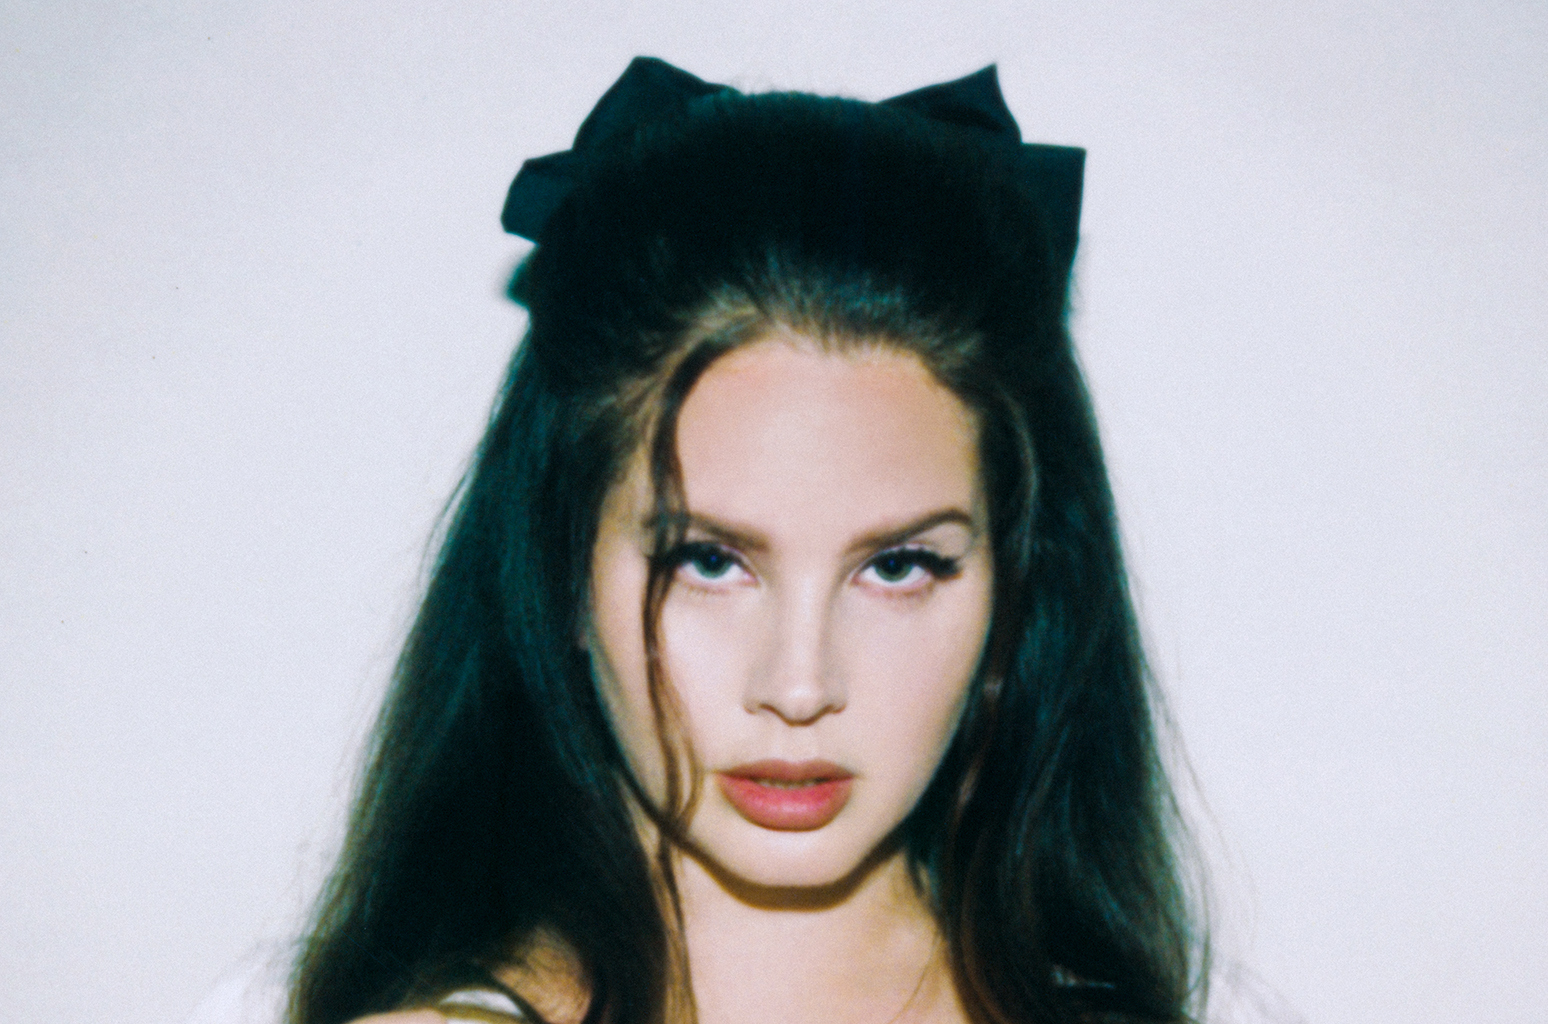 Lana Del Rey Announces New Album ‘Lasso'